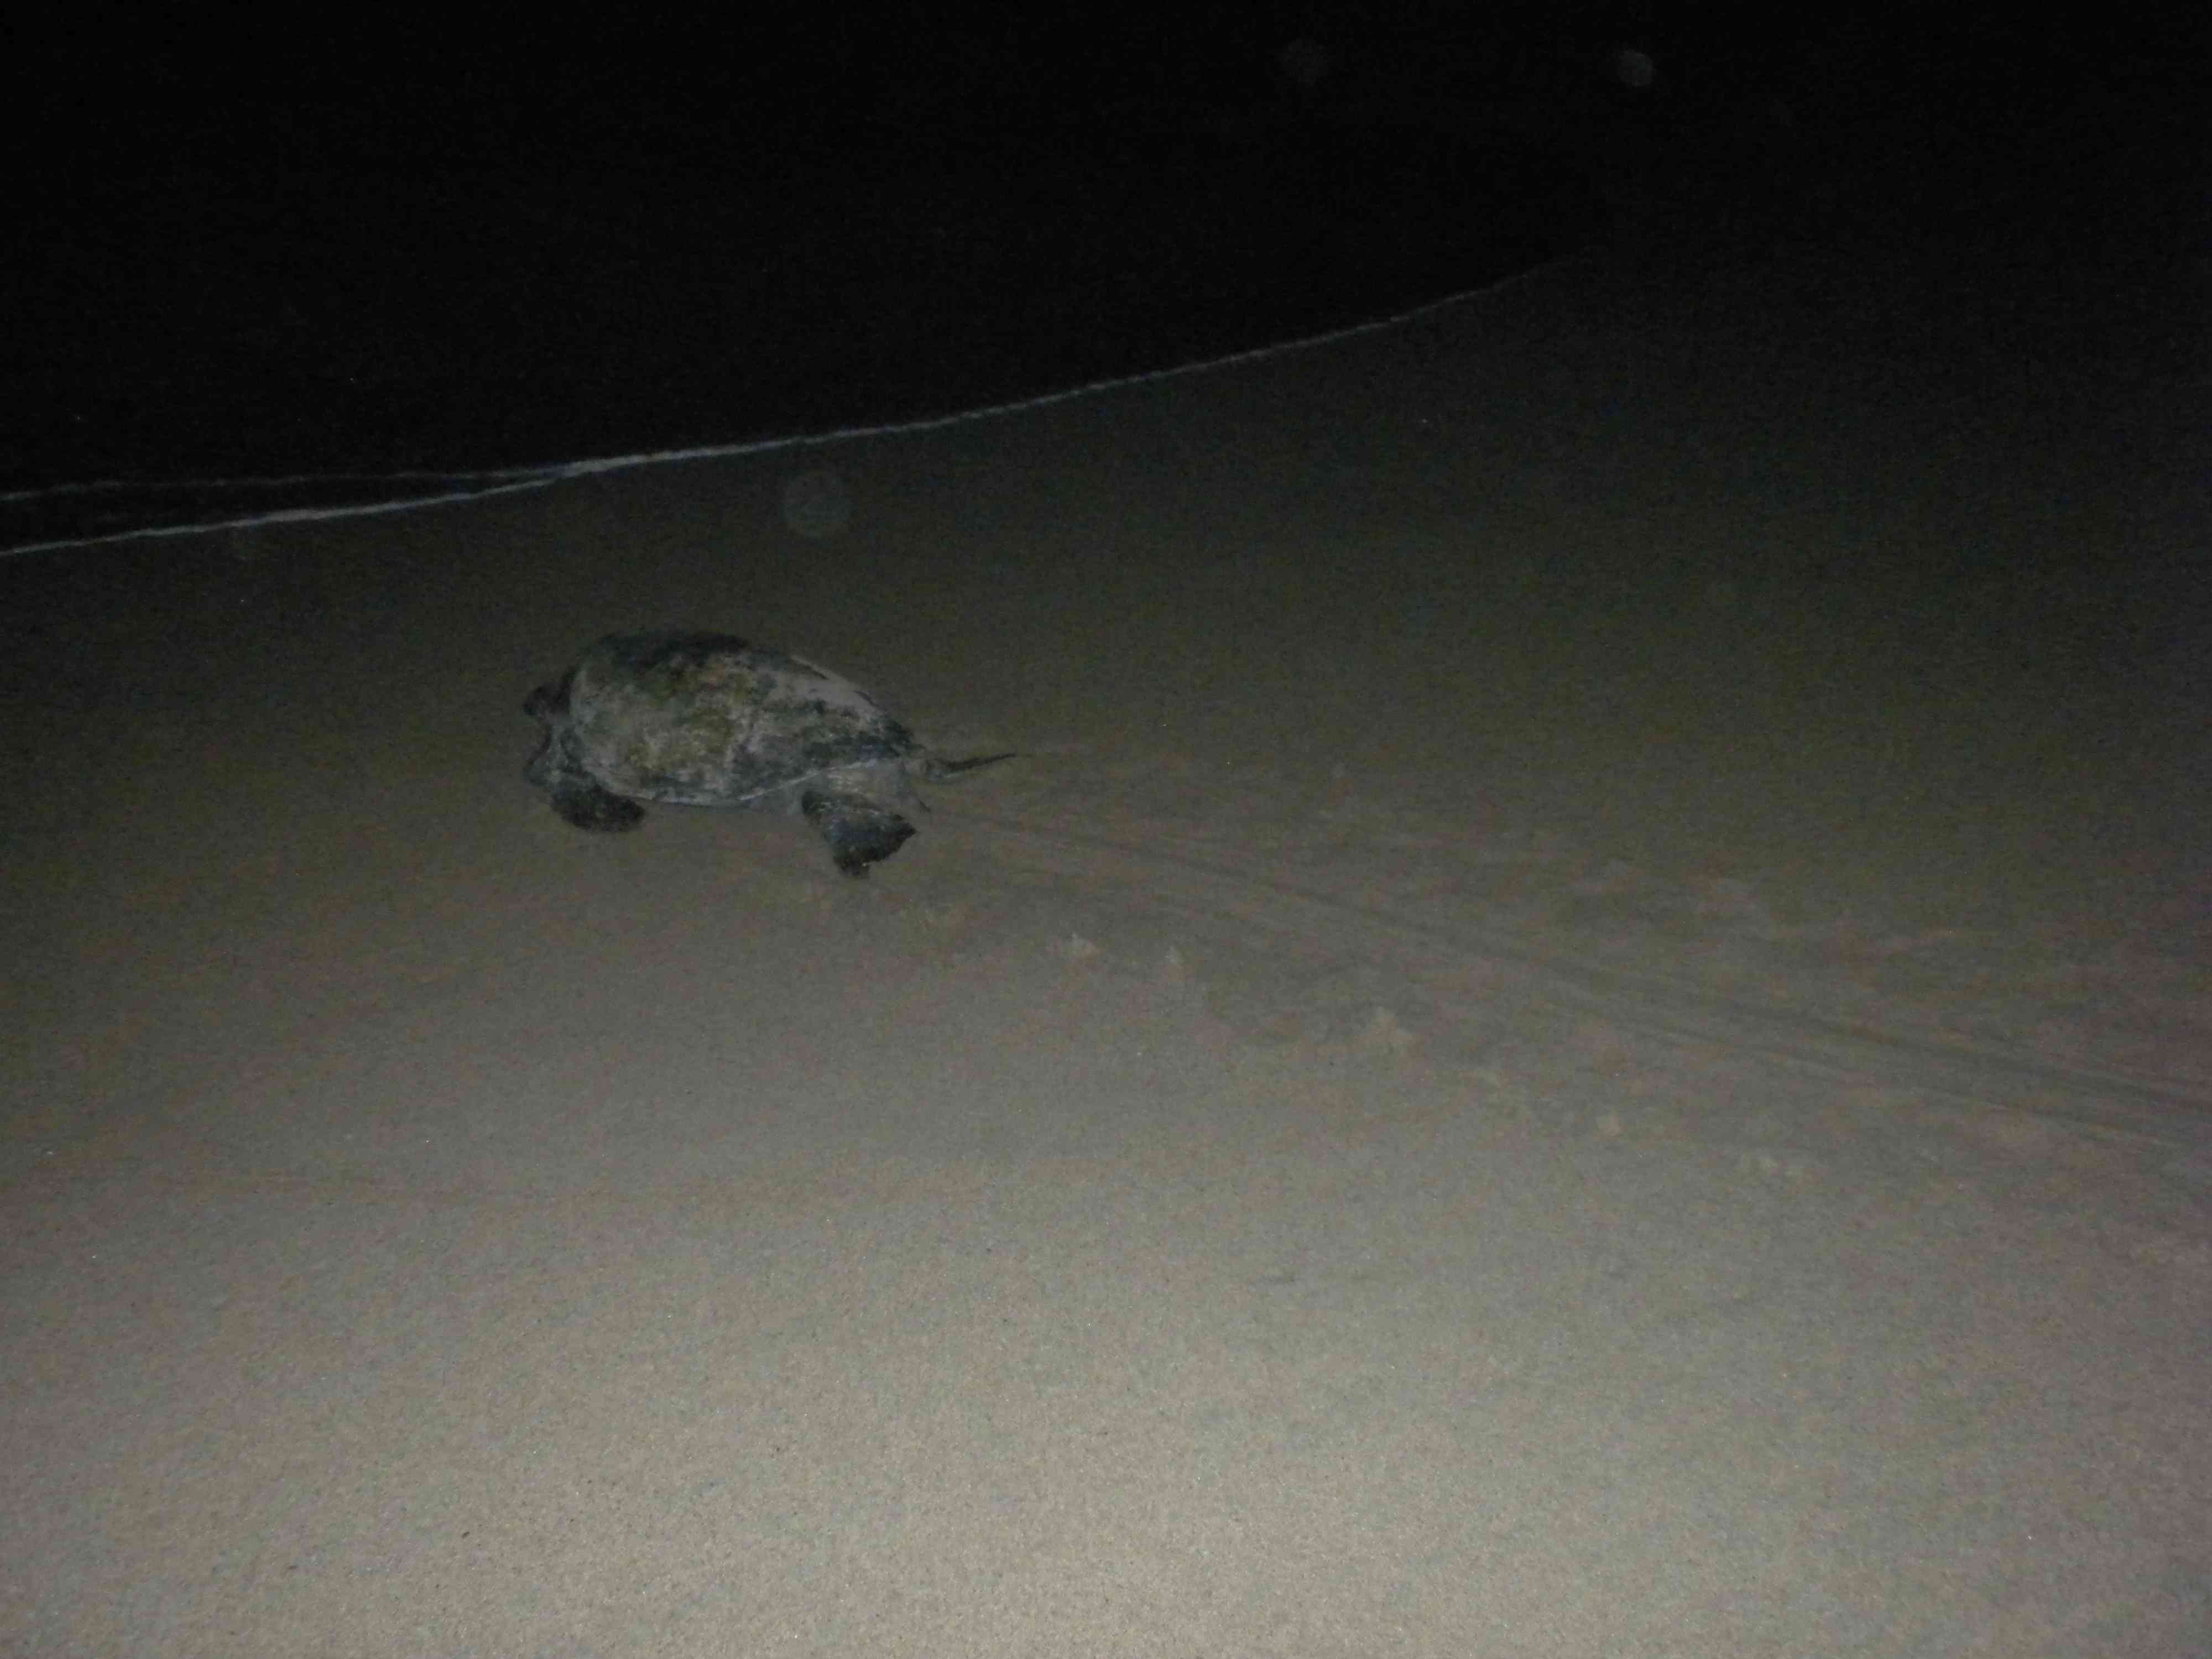 Prieta sea turtle, almost home